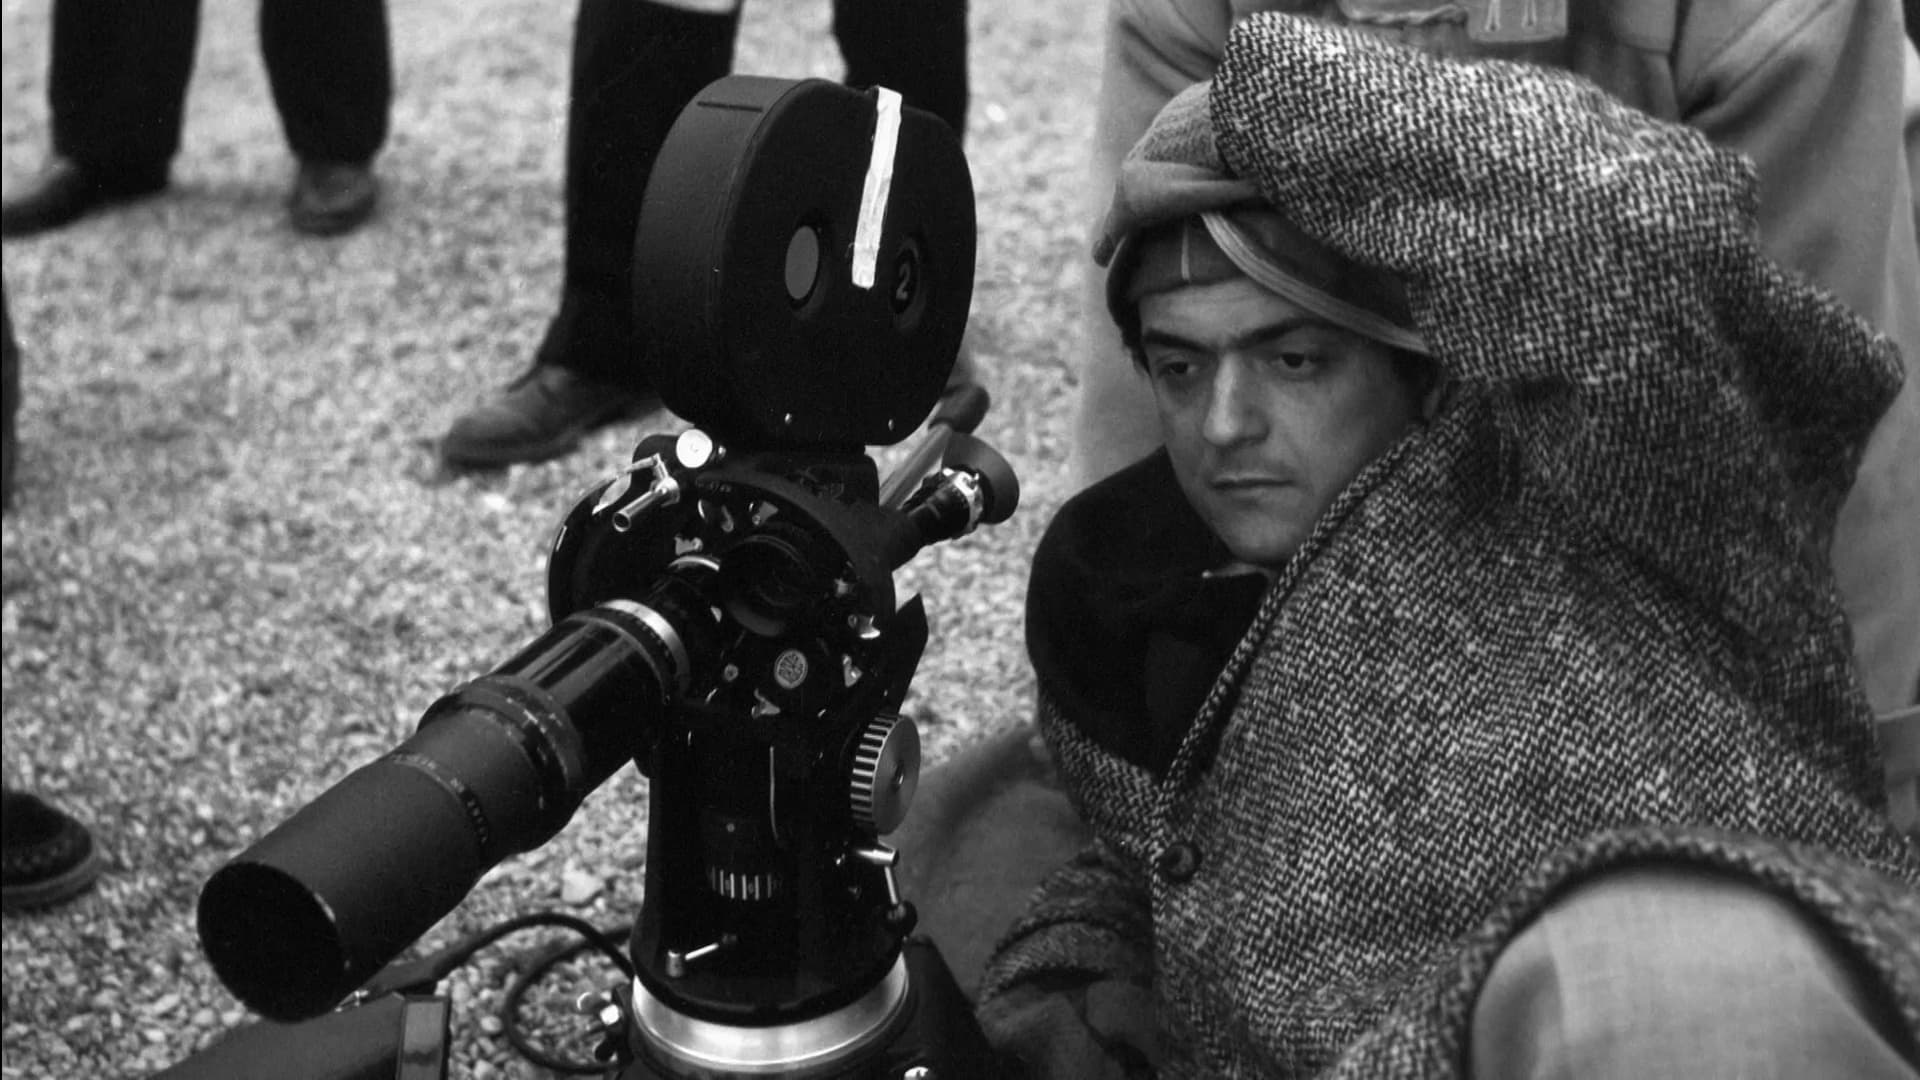 Kubrick par Kubrick (2020)